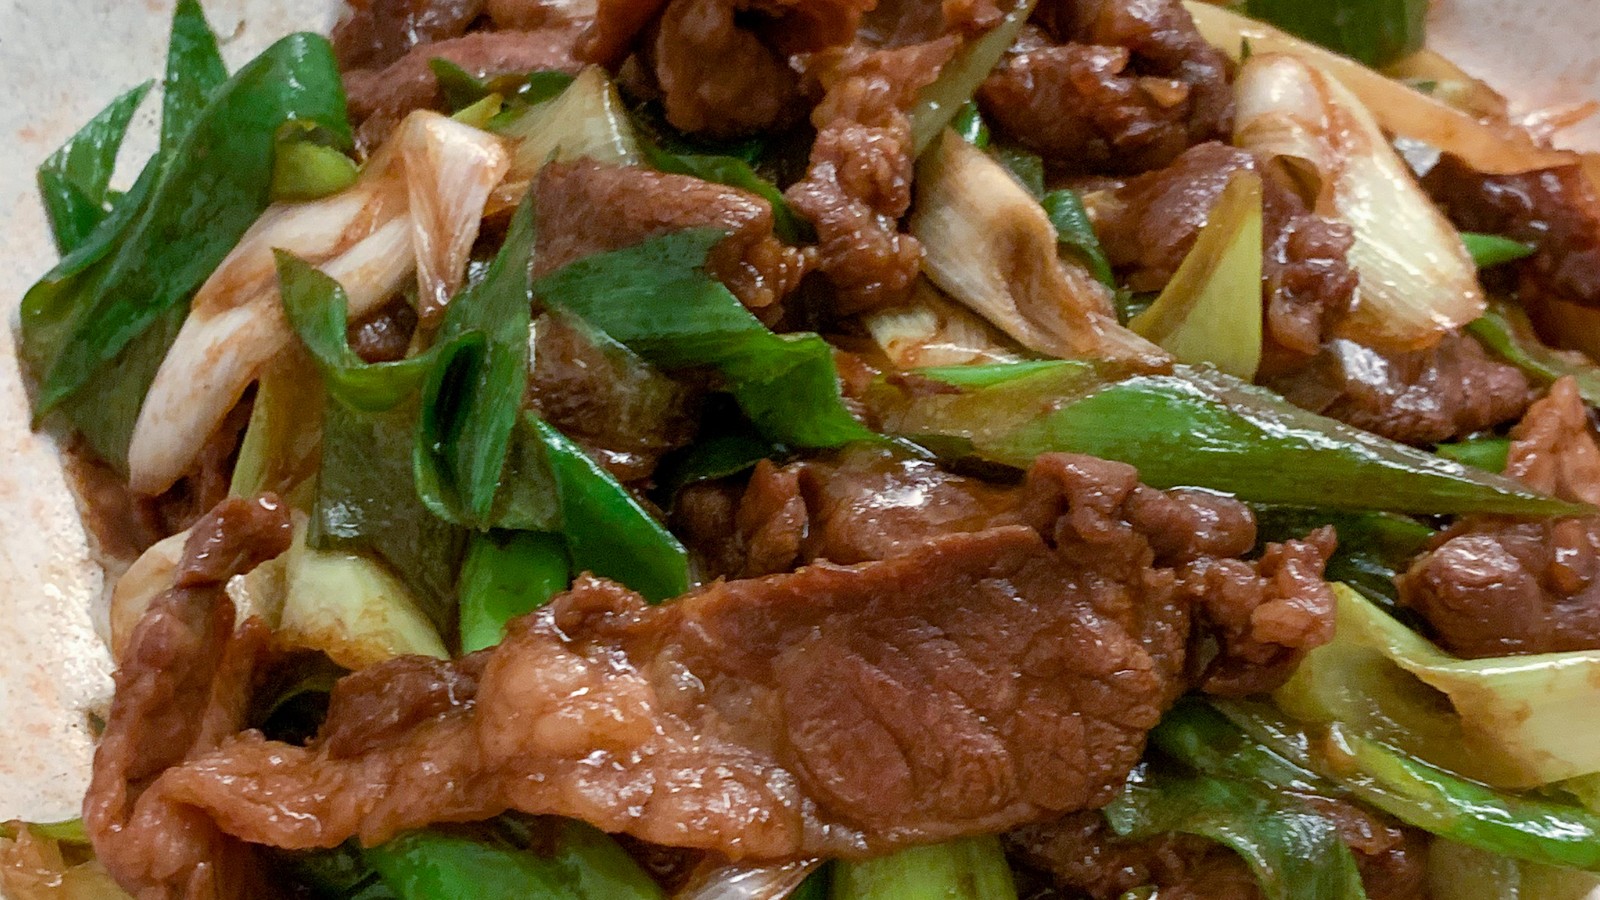 Image of Stir fried leek and beef slices (蔥爆牛肉)